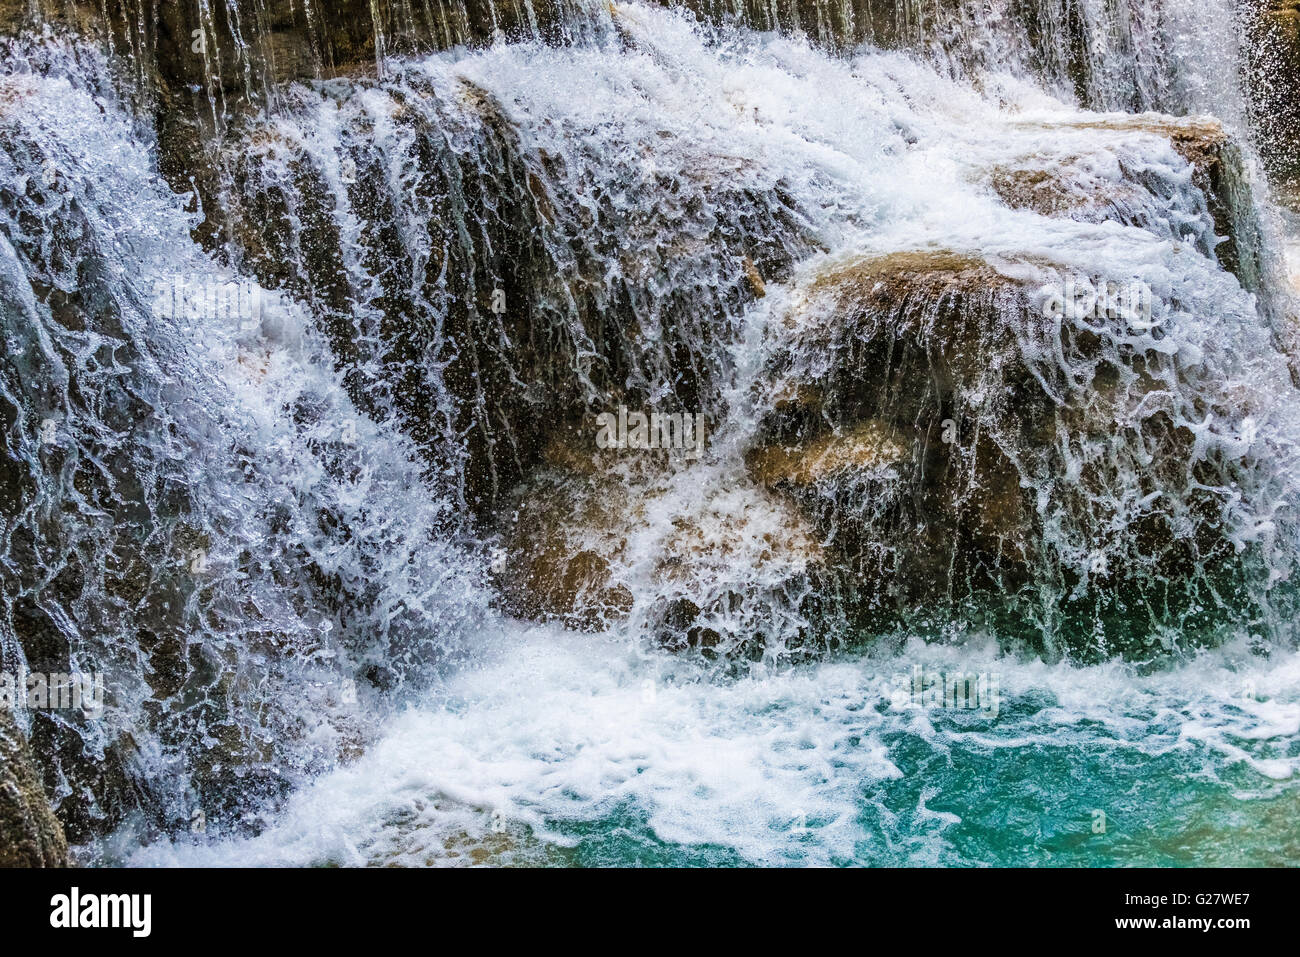 Les projections d'eau d'une cascade, Tat Cascades de Kuang Si, Luang Prabang, Laos, Louangphabang Banque D'Images